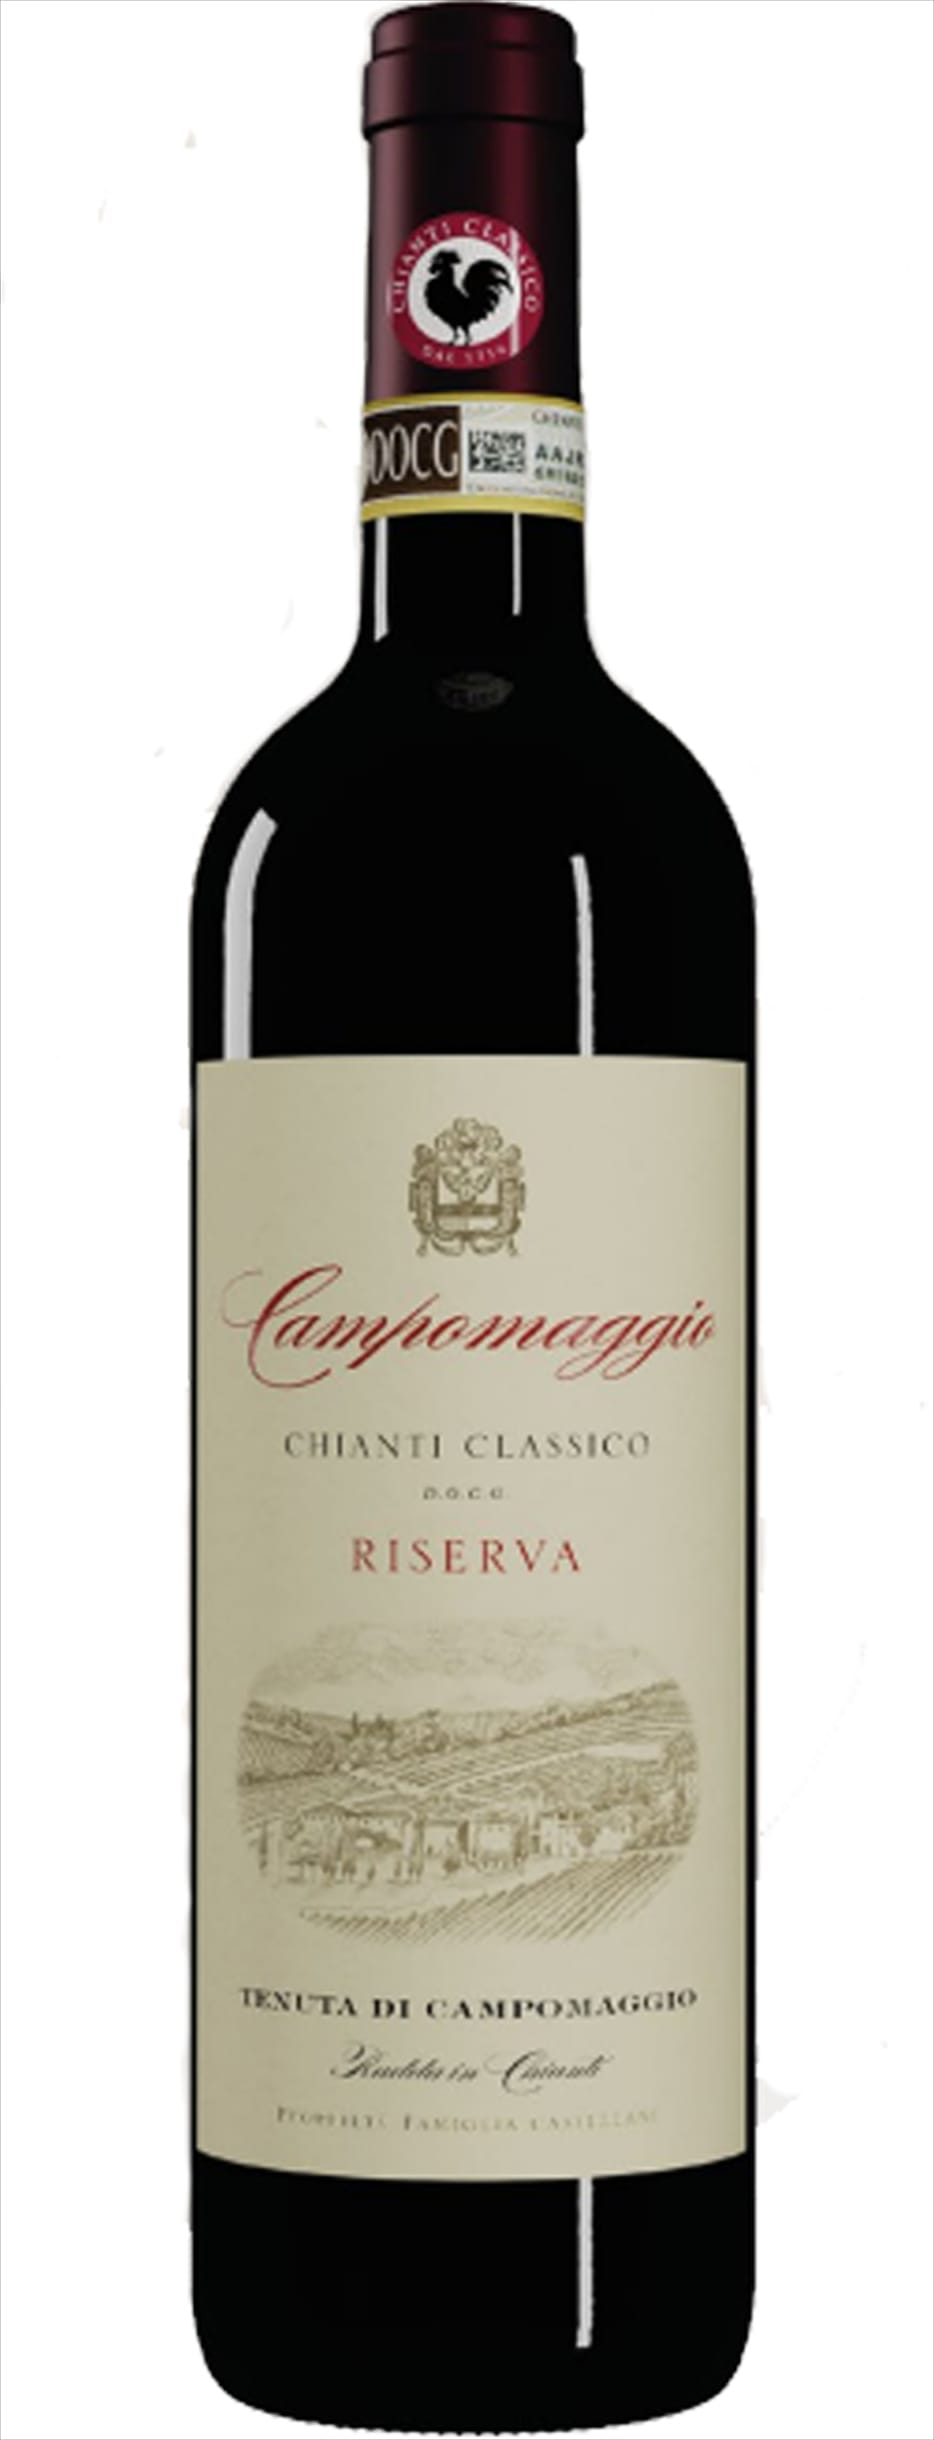 Campomaggio Chianti Classico Riserva Campomaggio DOCG 2018 75cl - Buy Campomaggio Wines from GREAT WINES DIRECT wine shop